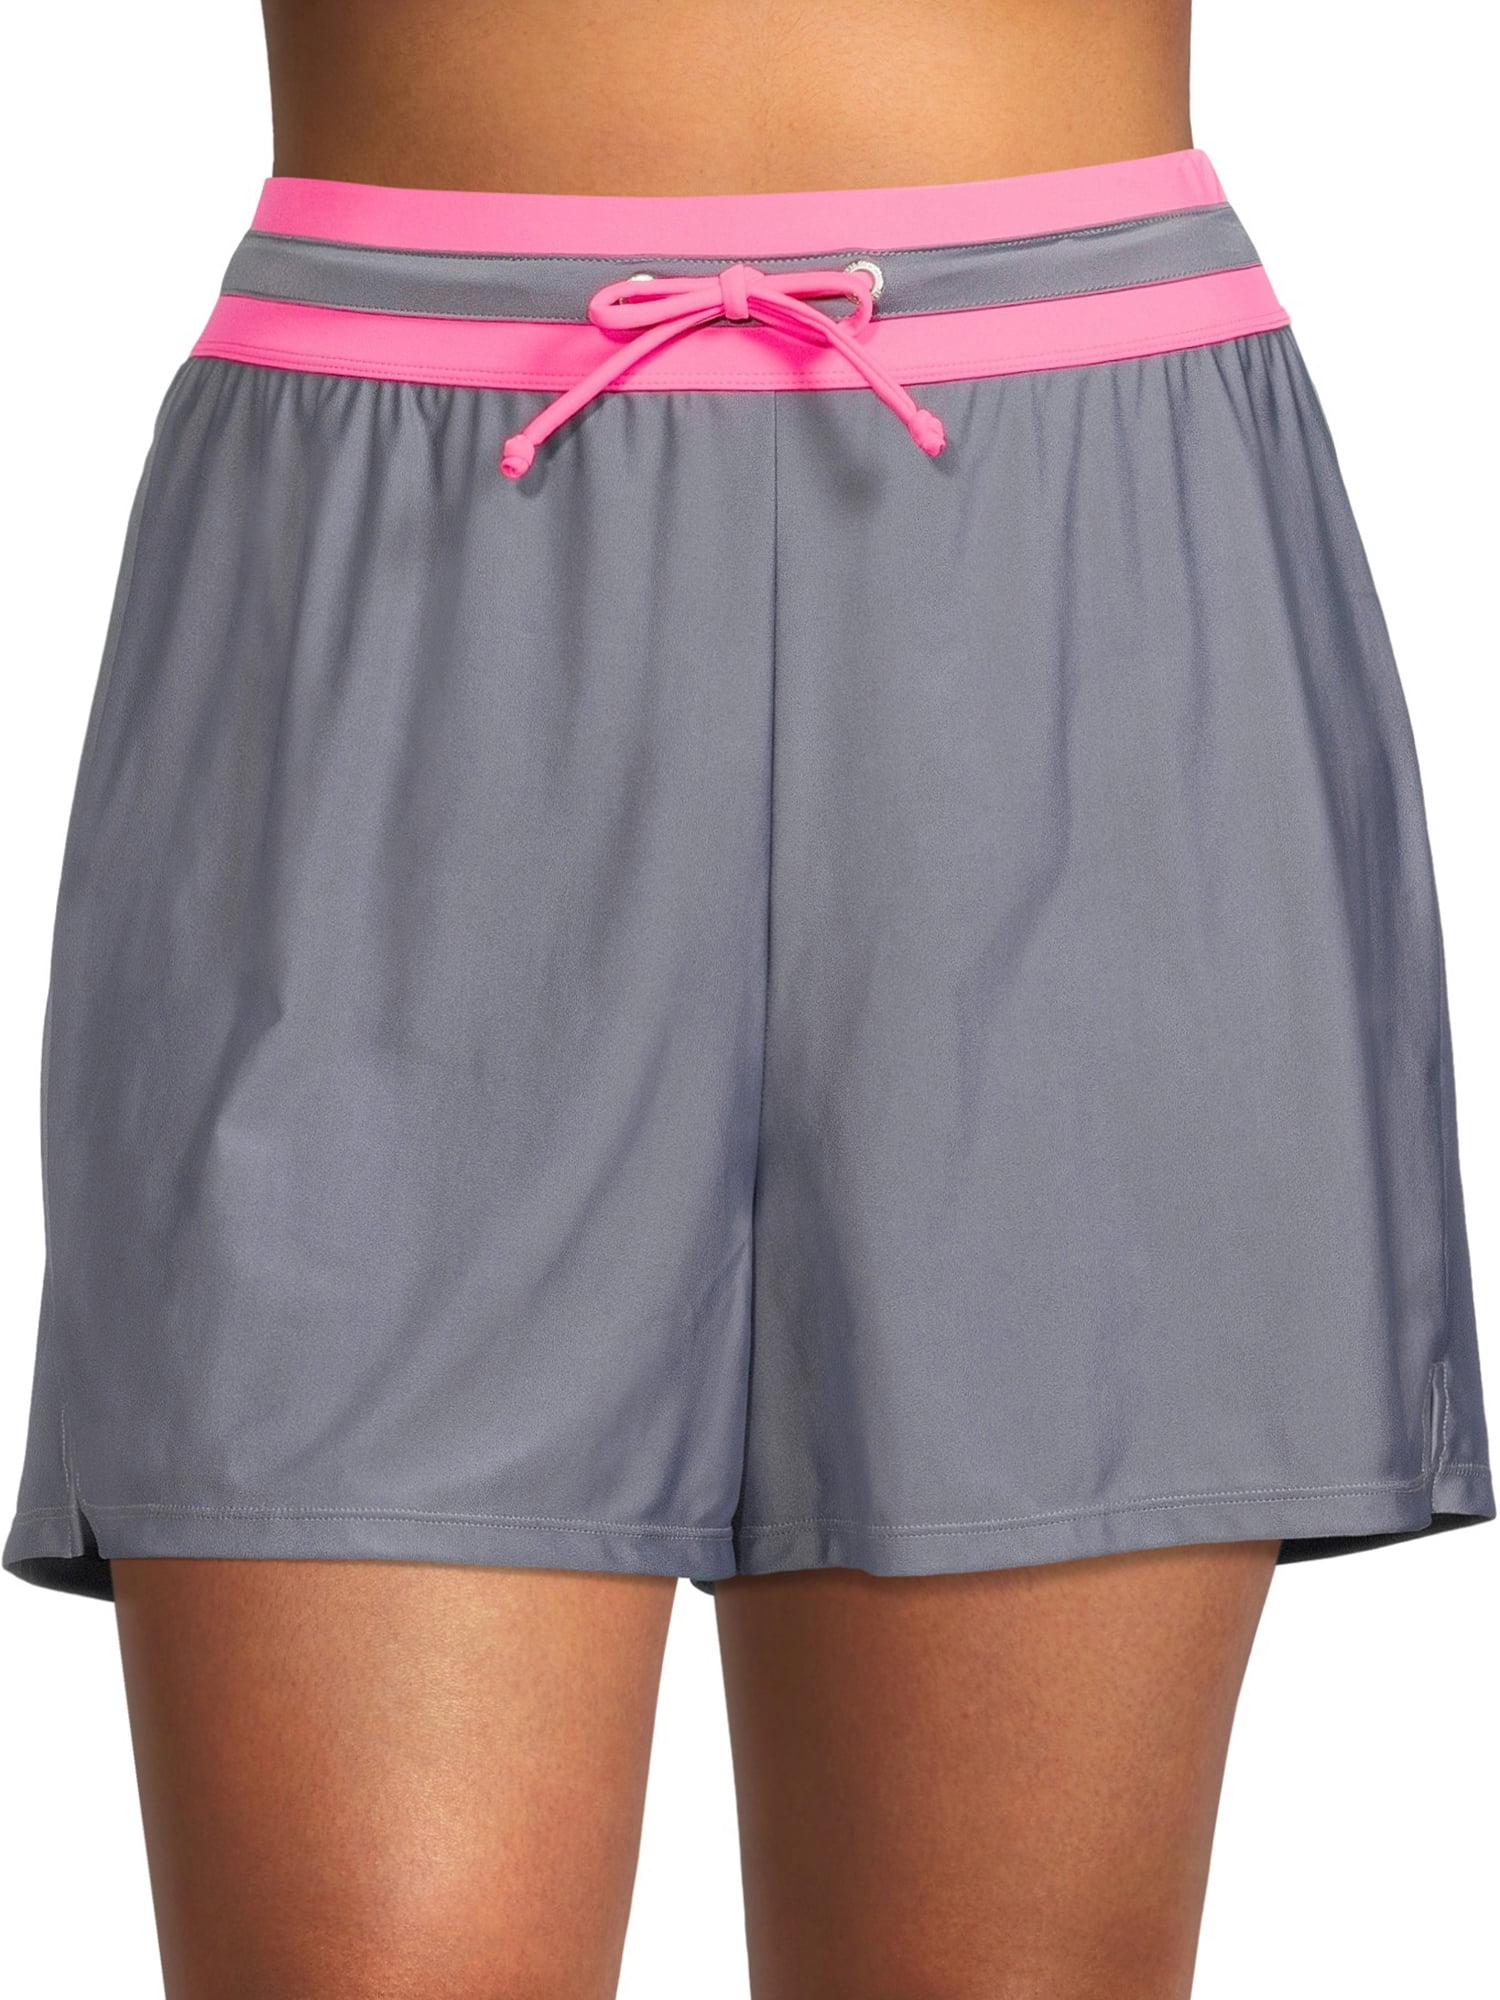 Free Tech Women'S Plus Size Athletic Swimsuit Shorts - Walmart.com